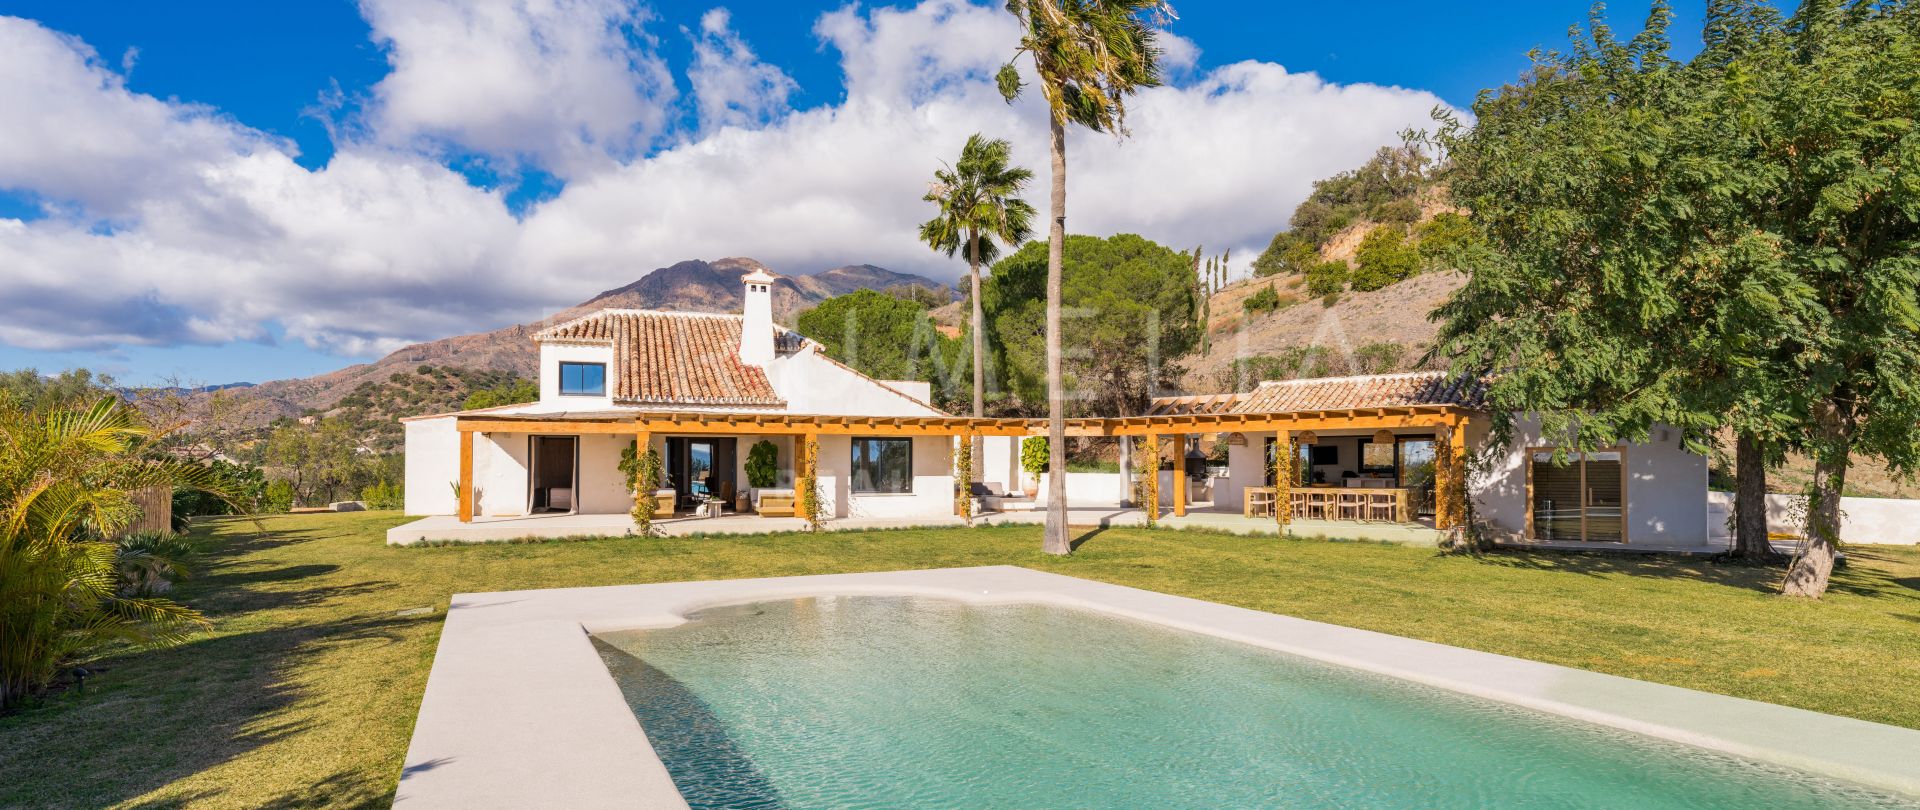 Villa på avskild landsbygd med panoramautsikt över havet, Estepona